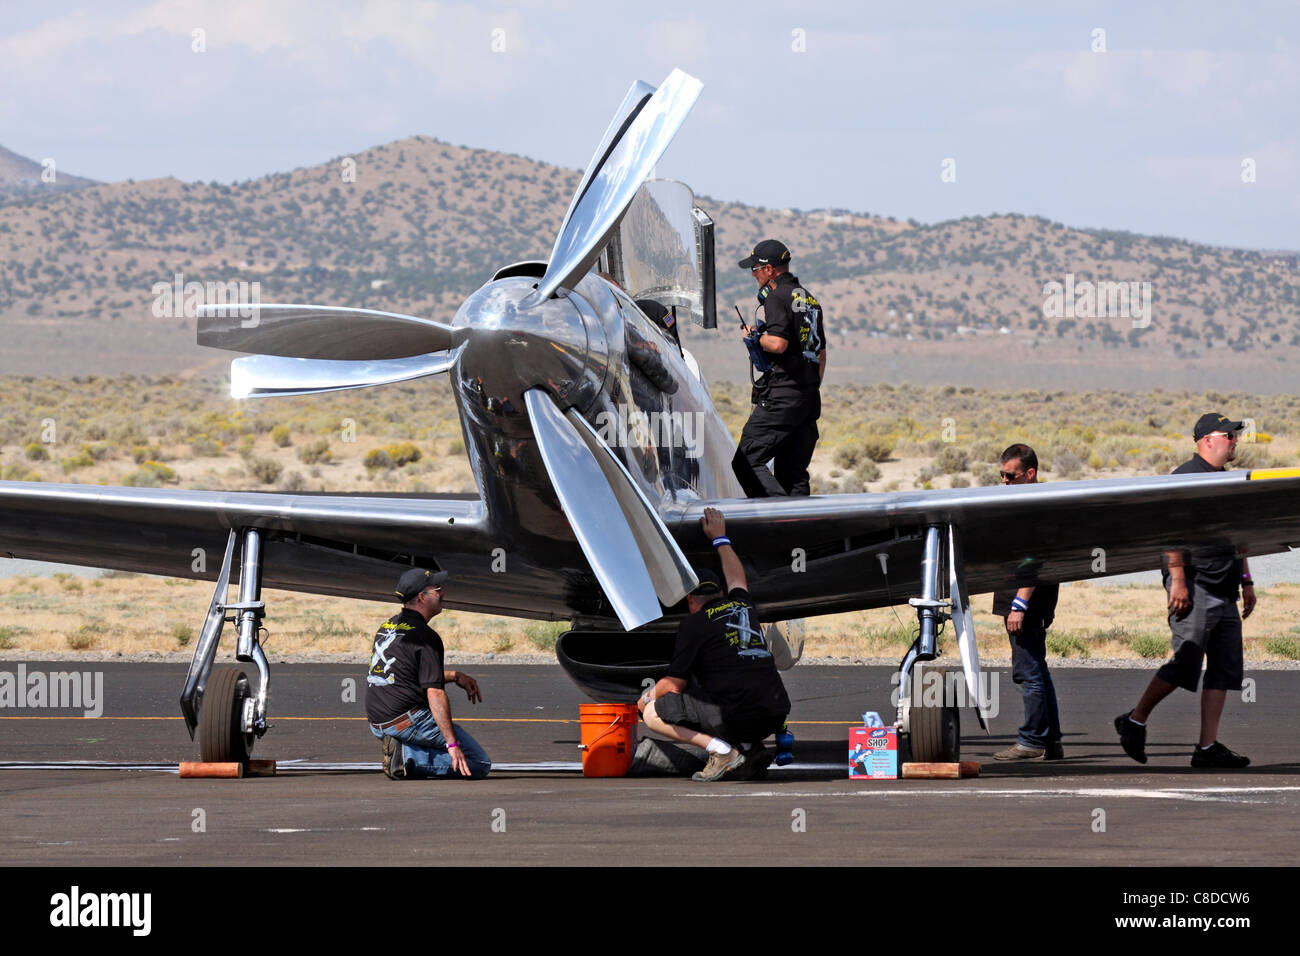 Miembro de la tripulación de tierra inspeccione el P-51 Mustang Metal precioso después de una carrera durante el campeonato nacional de 2011 Carreras Aéreas Foto de stock